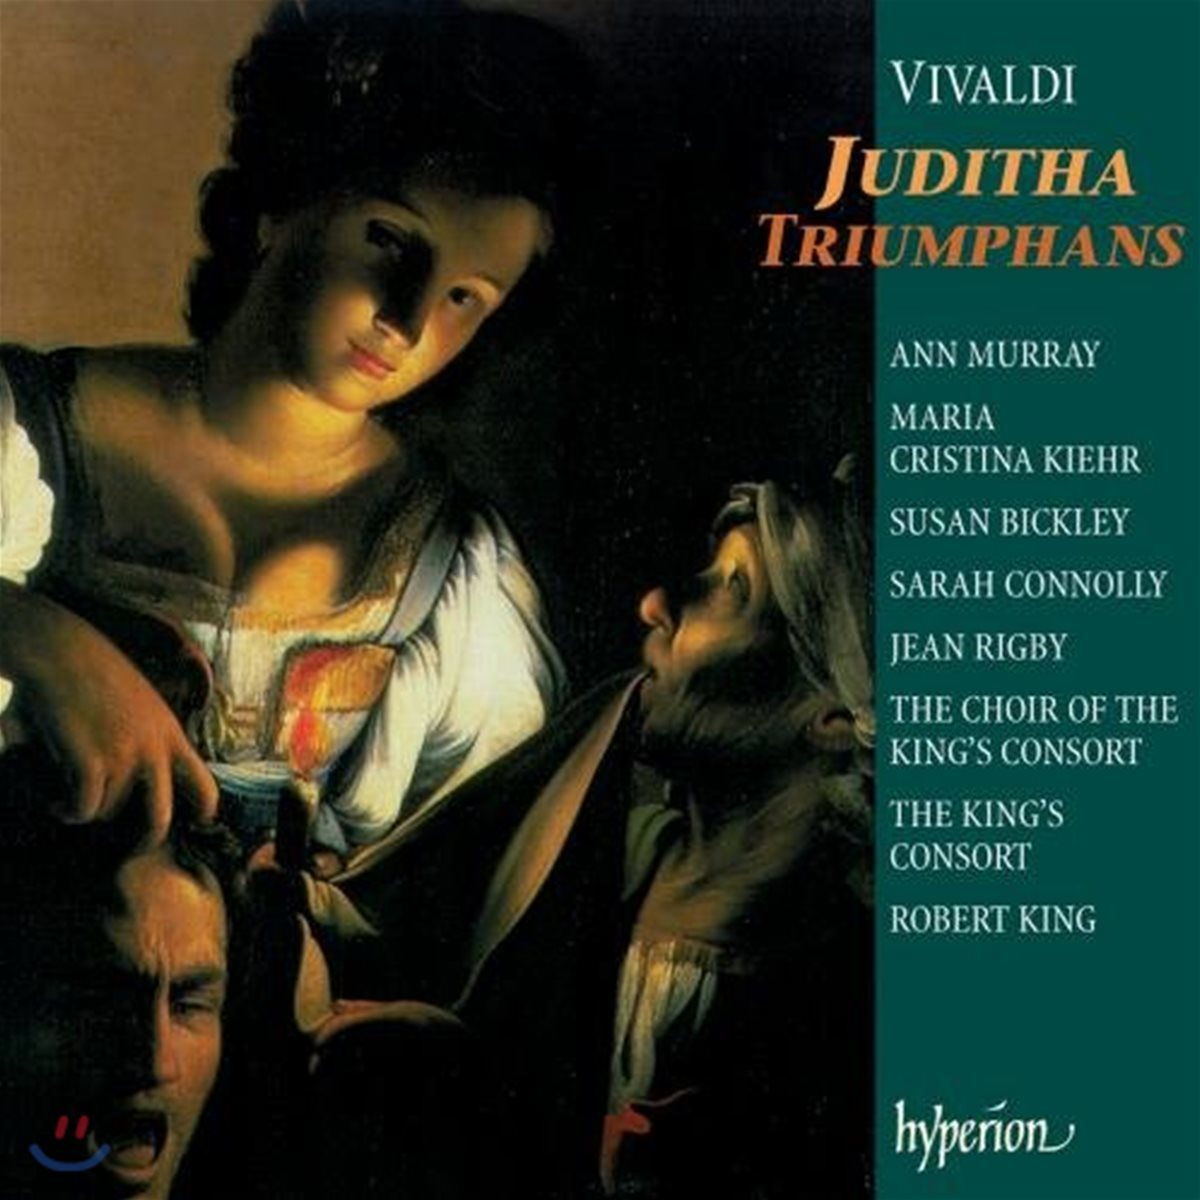 King's Consort 비발디: 종교 음악 4권 - 승리한 유디트 (Vivaldi: Juditha Triumphans)